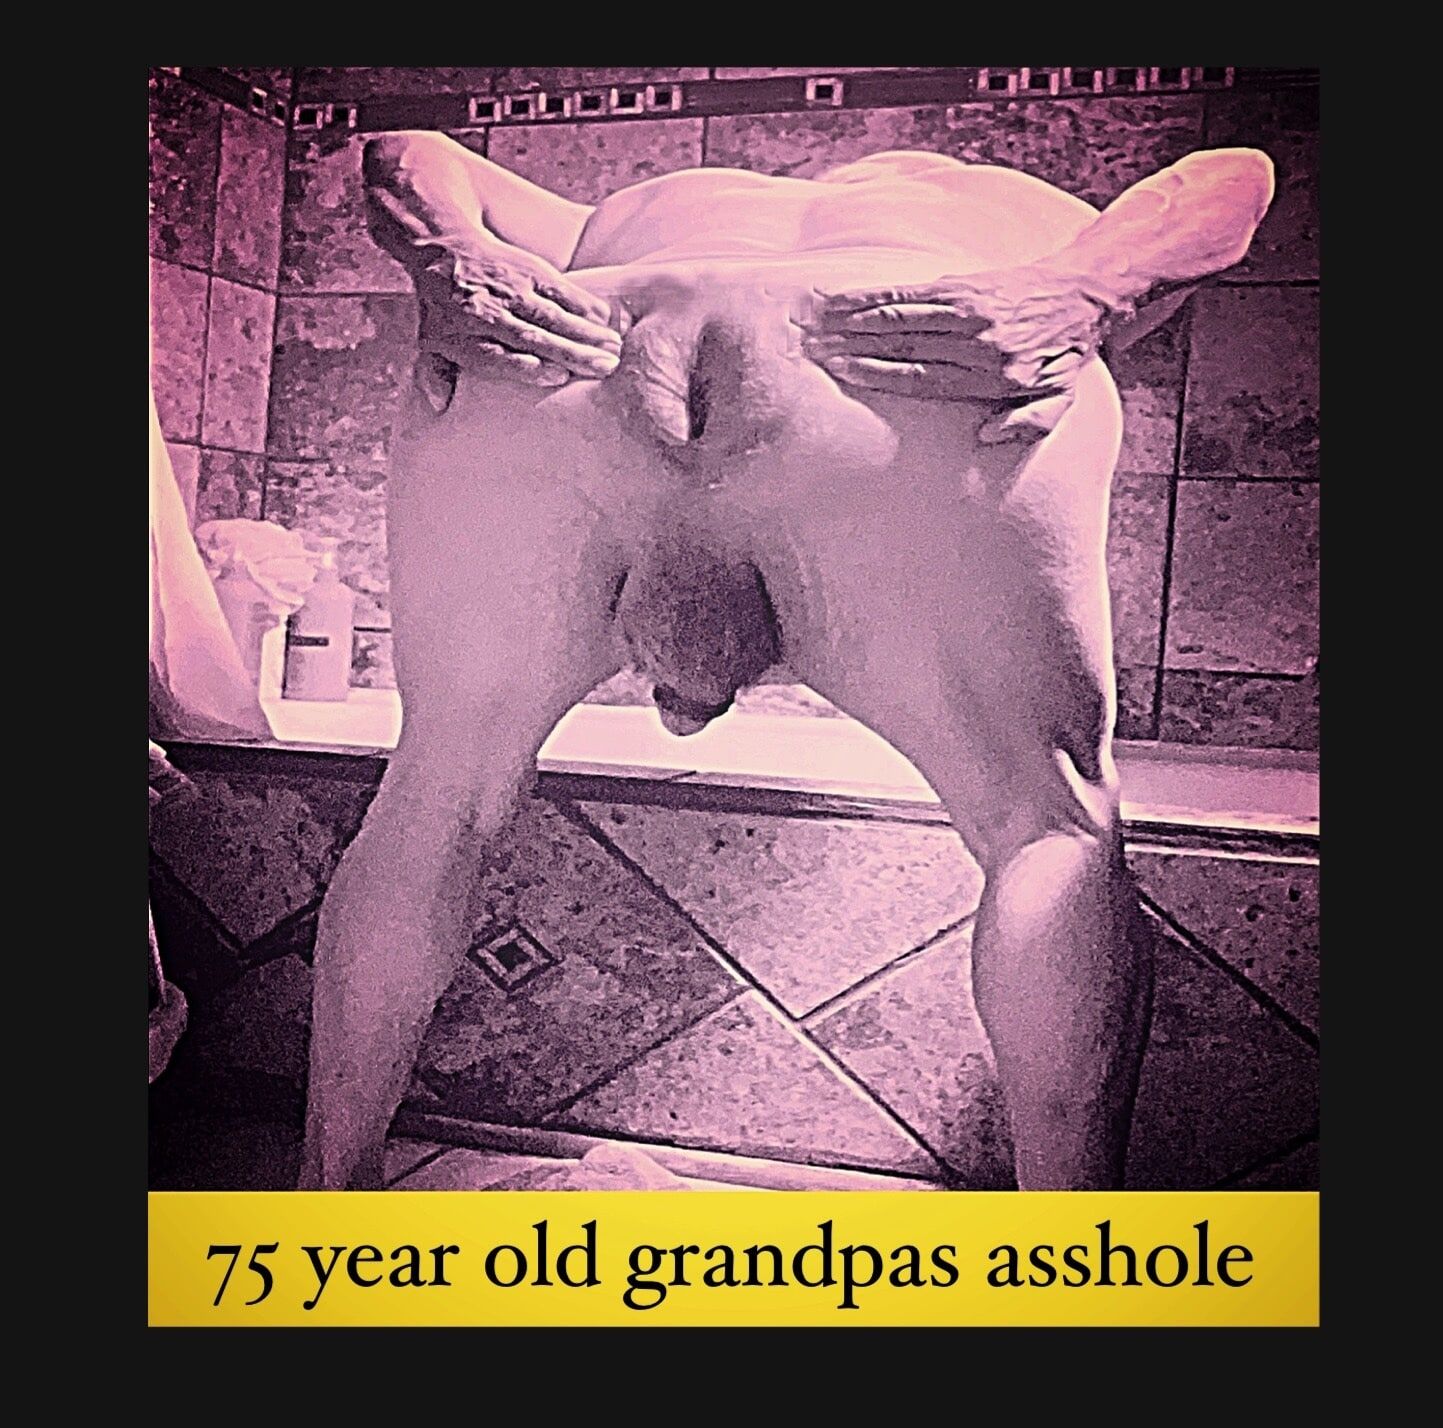 Grandpa spreading his asshole